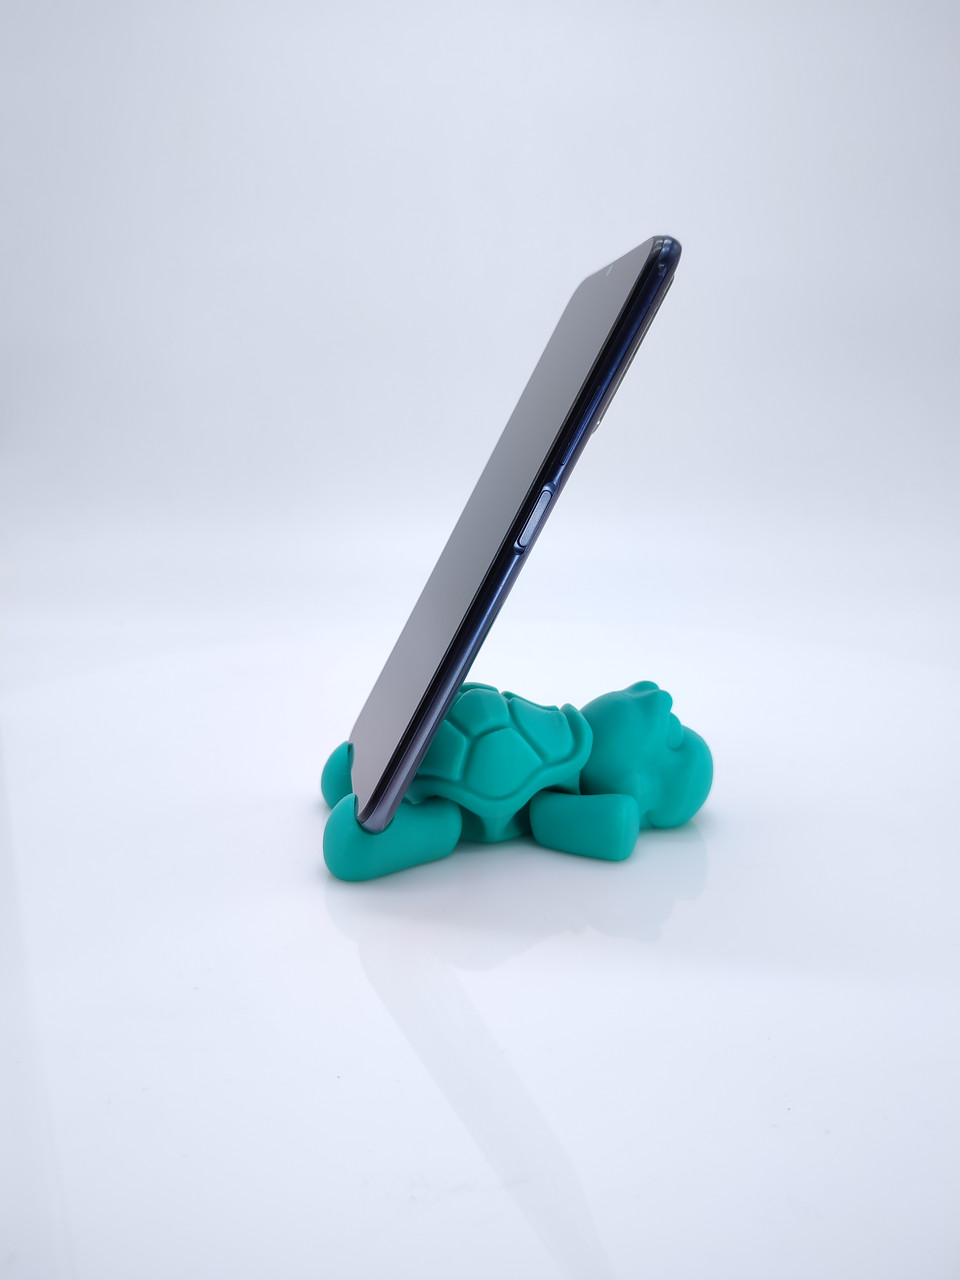 Підставка під телефон настільна тримач для смартфонів у вигляді черепашки із зеленого пластика